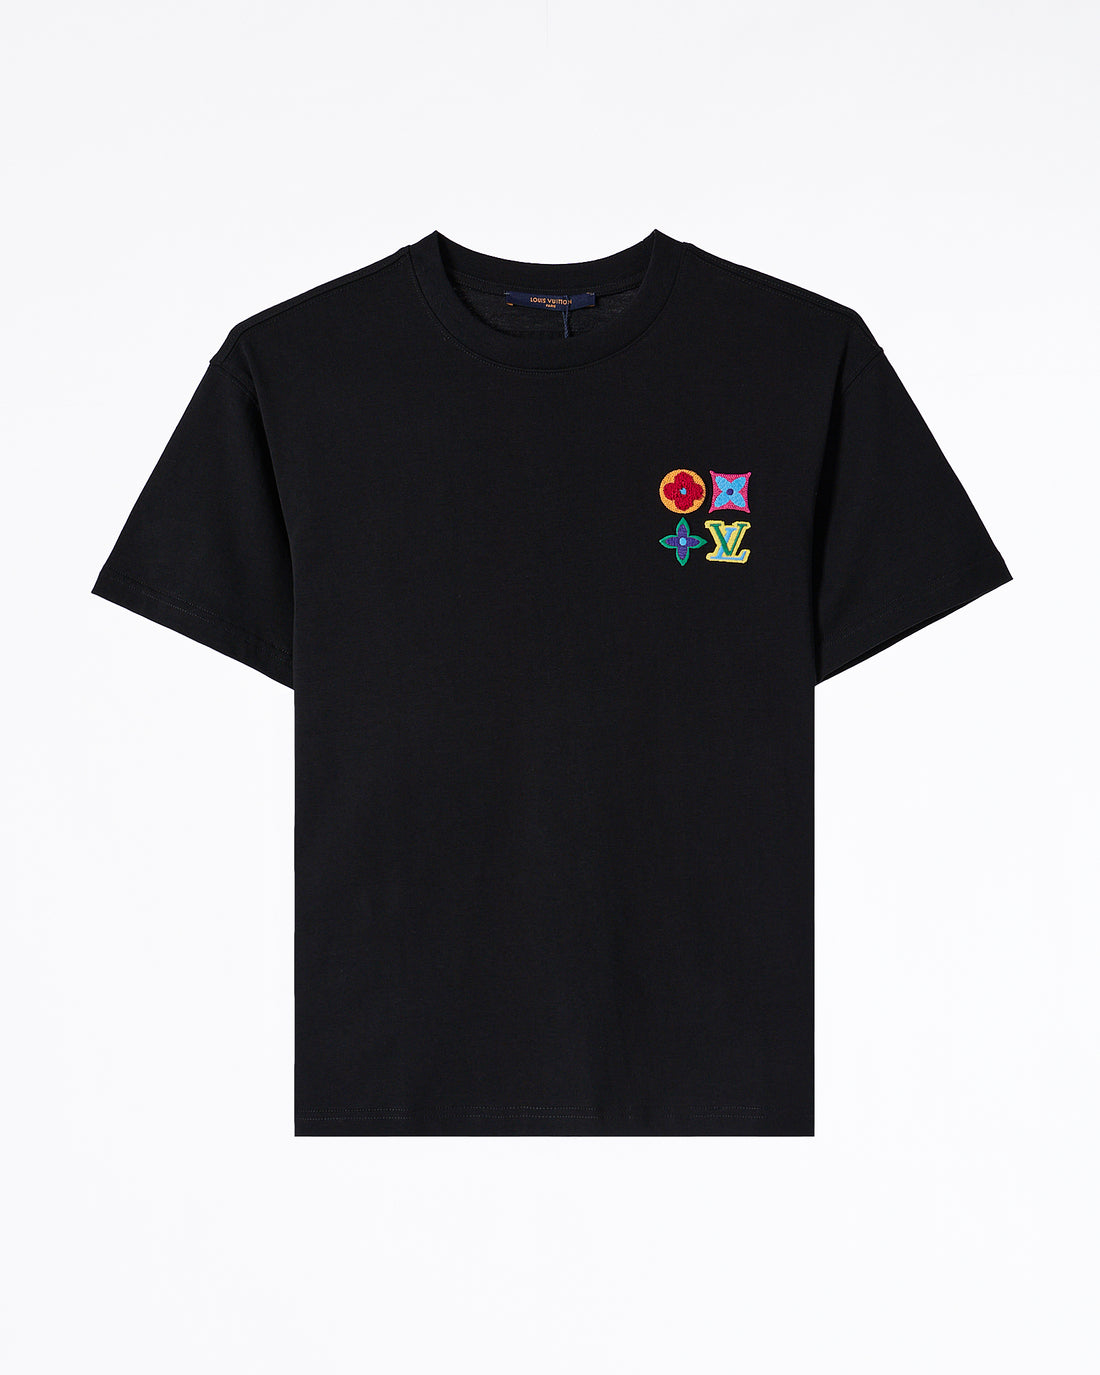 LV Monogram Velvet Men T-Shirt 54.90 - MOI OUTFIT